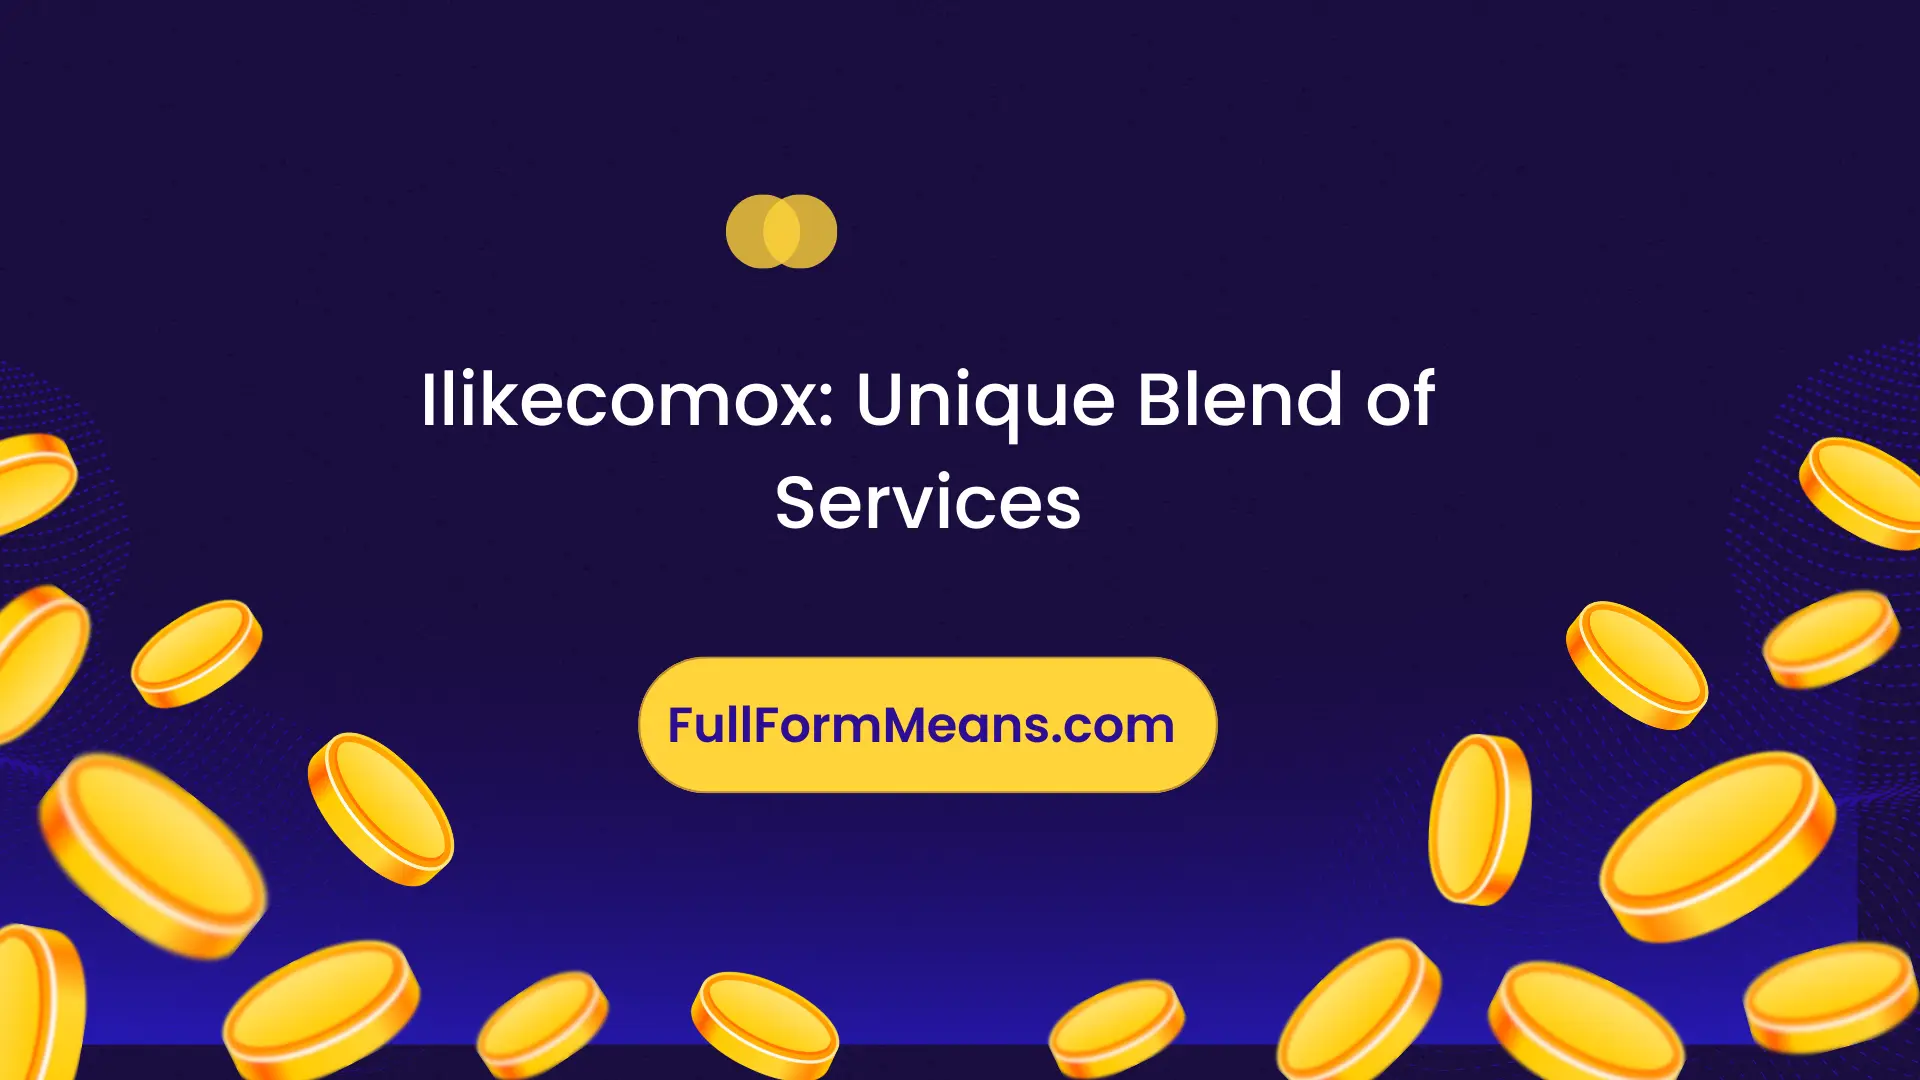 Ilikecomox: Unique Blend of Services